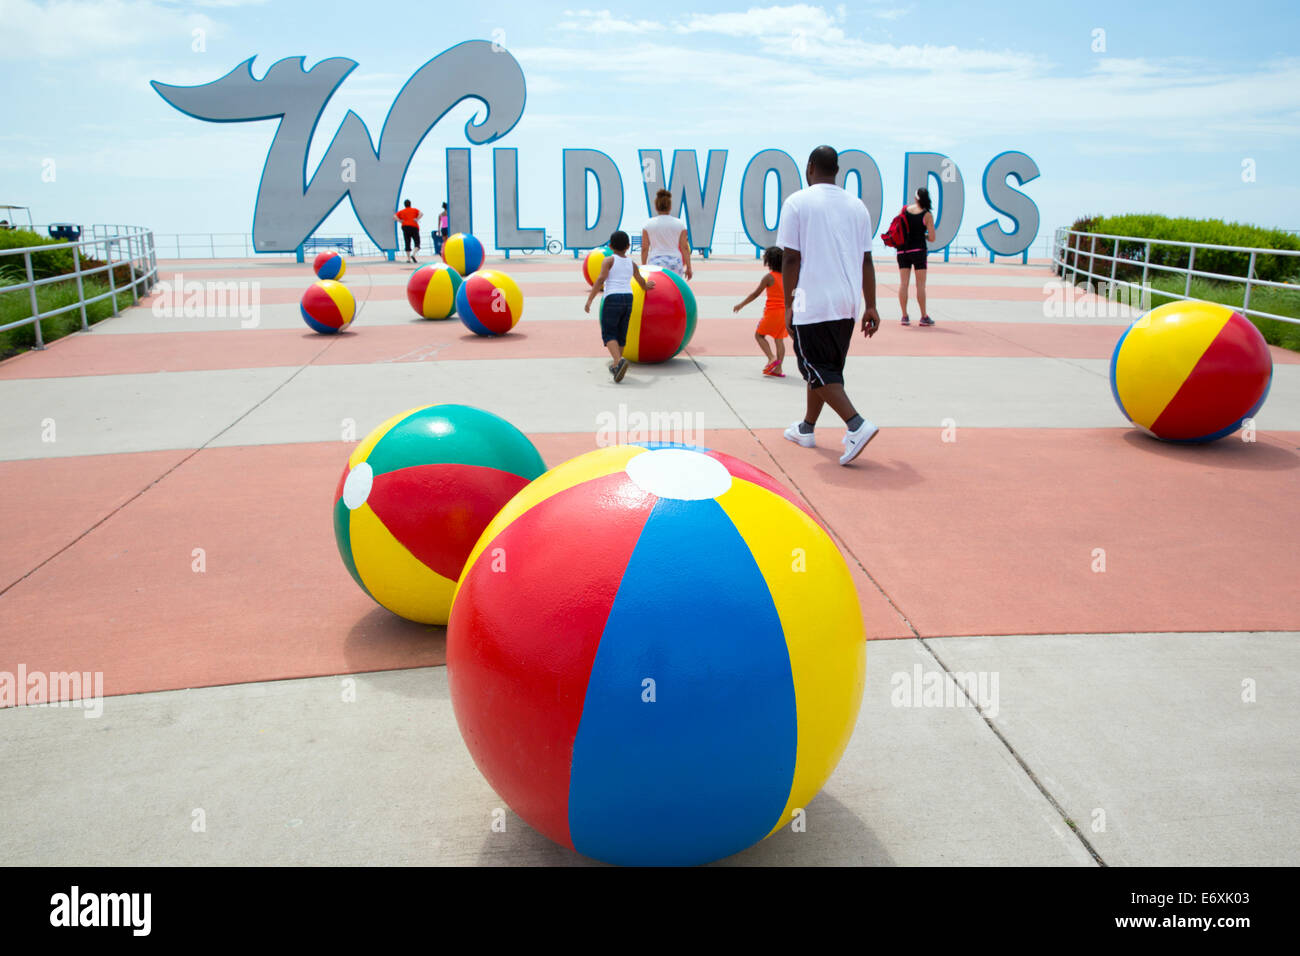 USA,New Jersey,Wildwood,Wildwood sign and beach balls Stock Photo